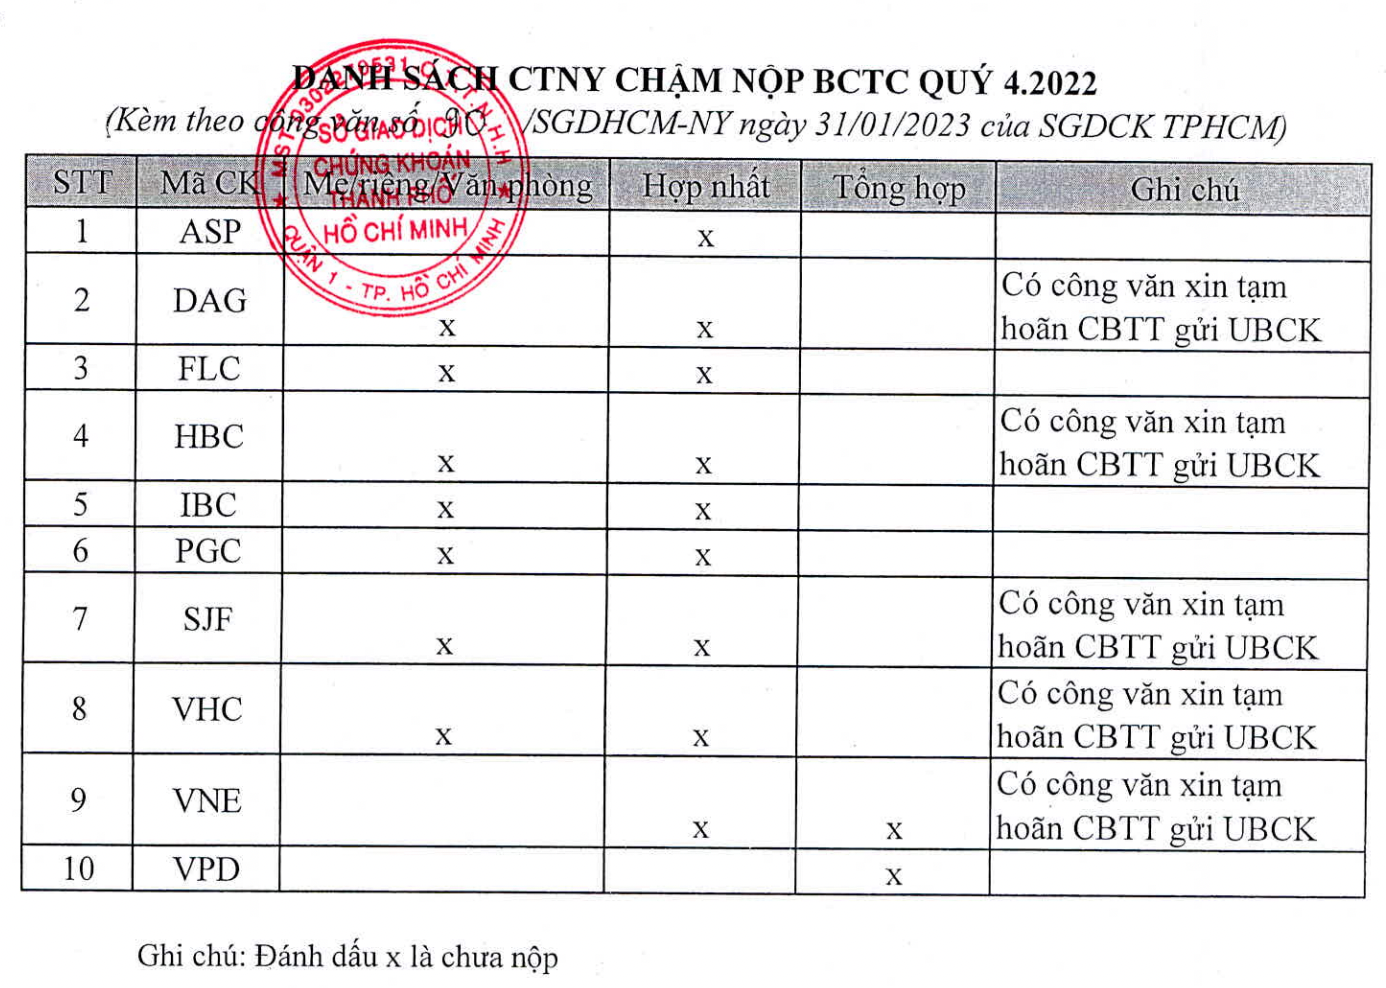 Tập đoàn Hòa Bình, Apax Holdings, FLC, Vĩnh Hoàn... bị HoSE "tuýt còi" vì chưa công bố báo cáo tài chính quý 4 - Ảnh 2.